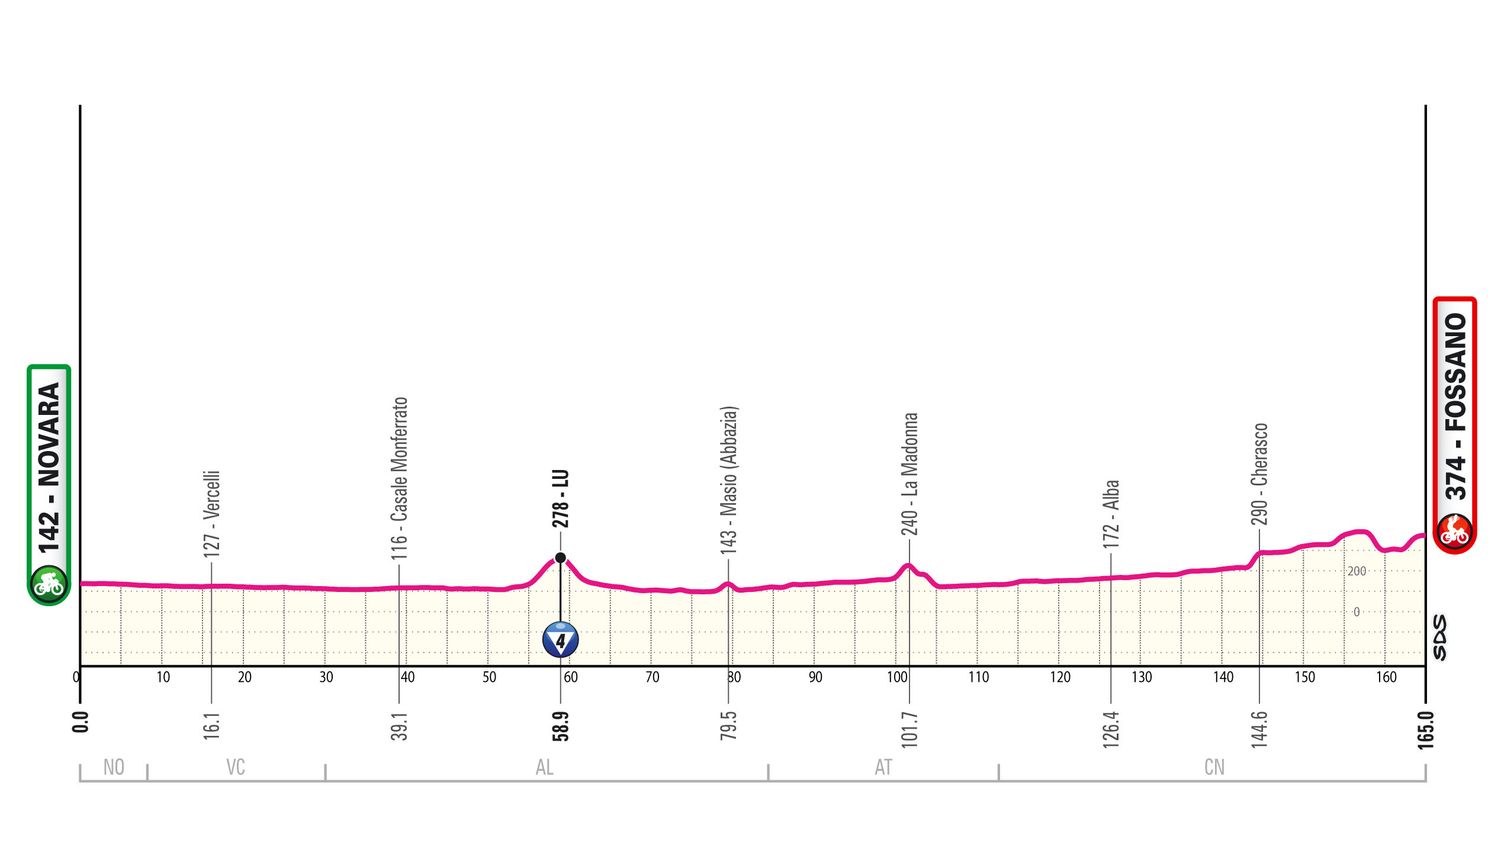 Etappe 3 Giro d'Italia